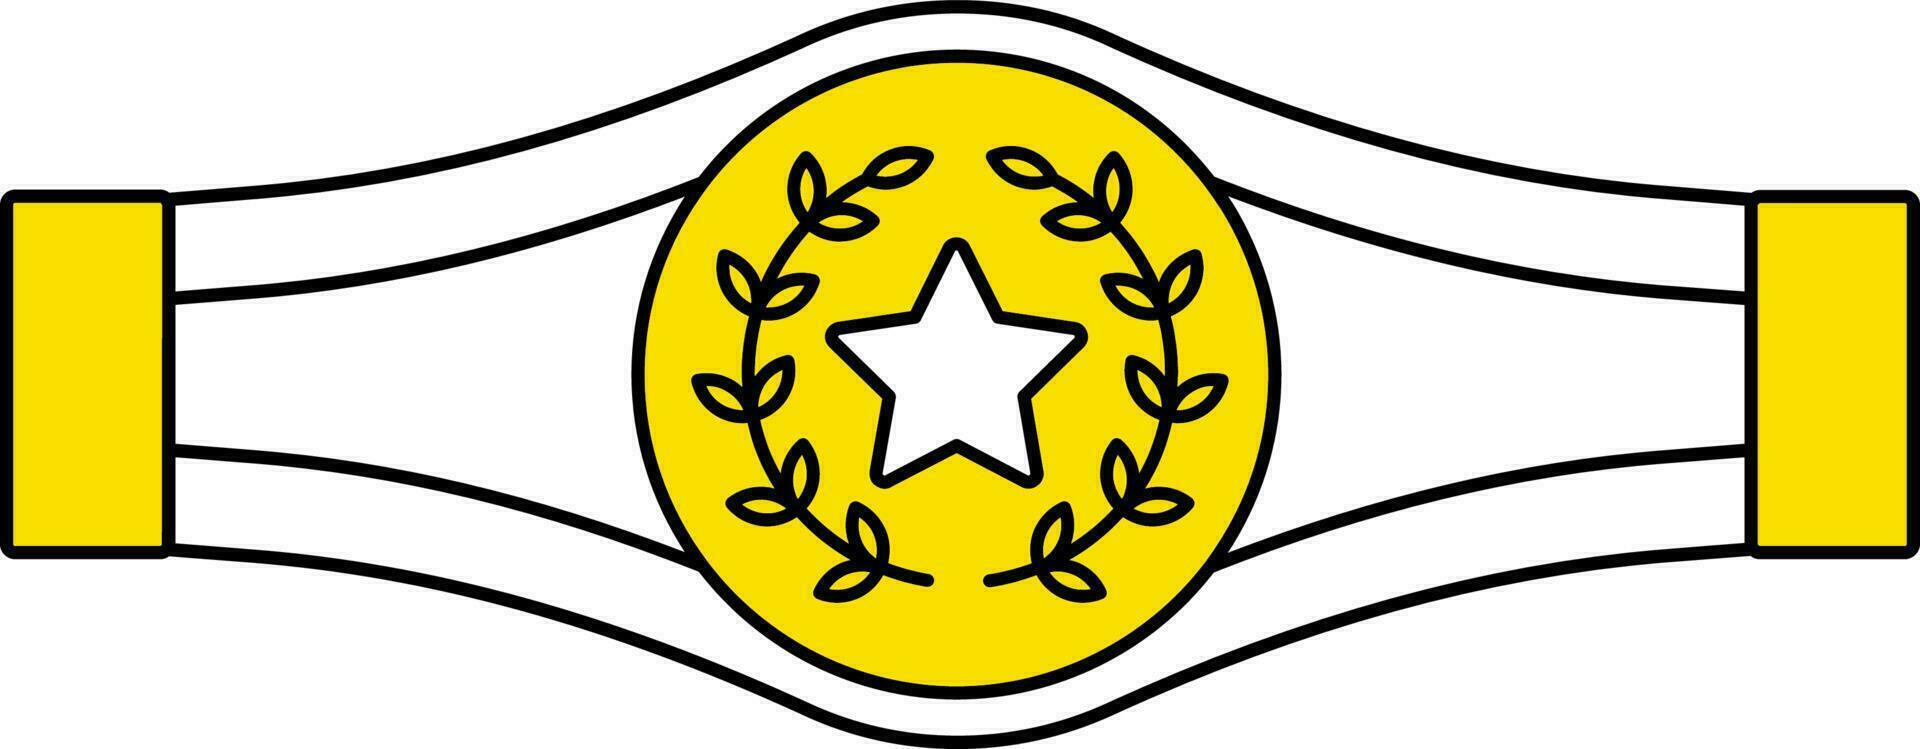 vergeben oder Champion Gürtel Symbol im Weiß und Gelb Farbe. vektor